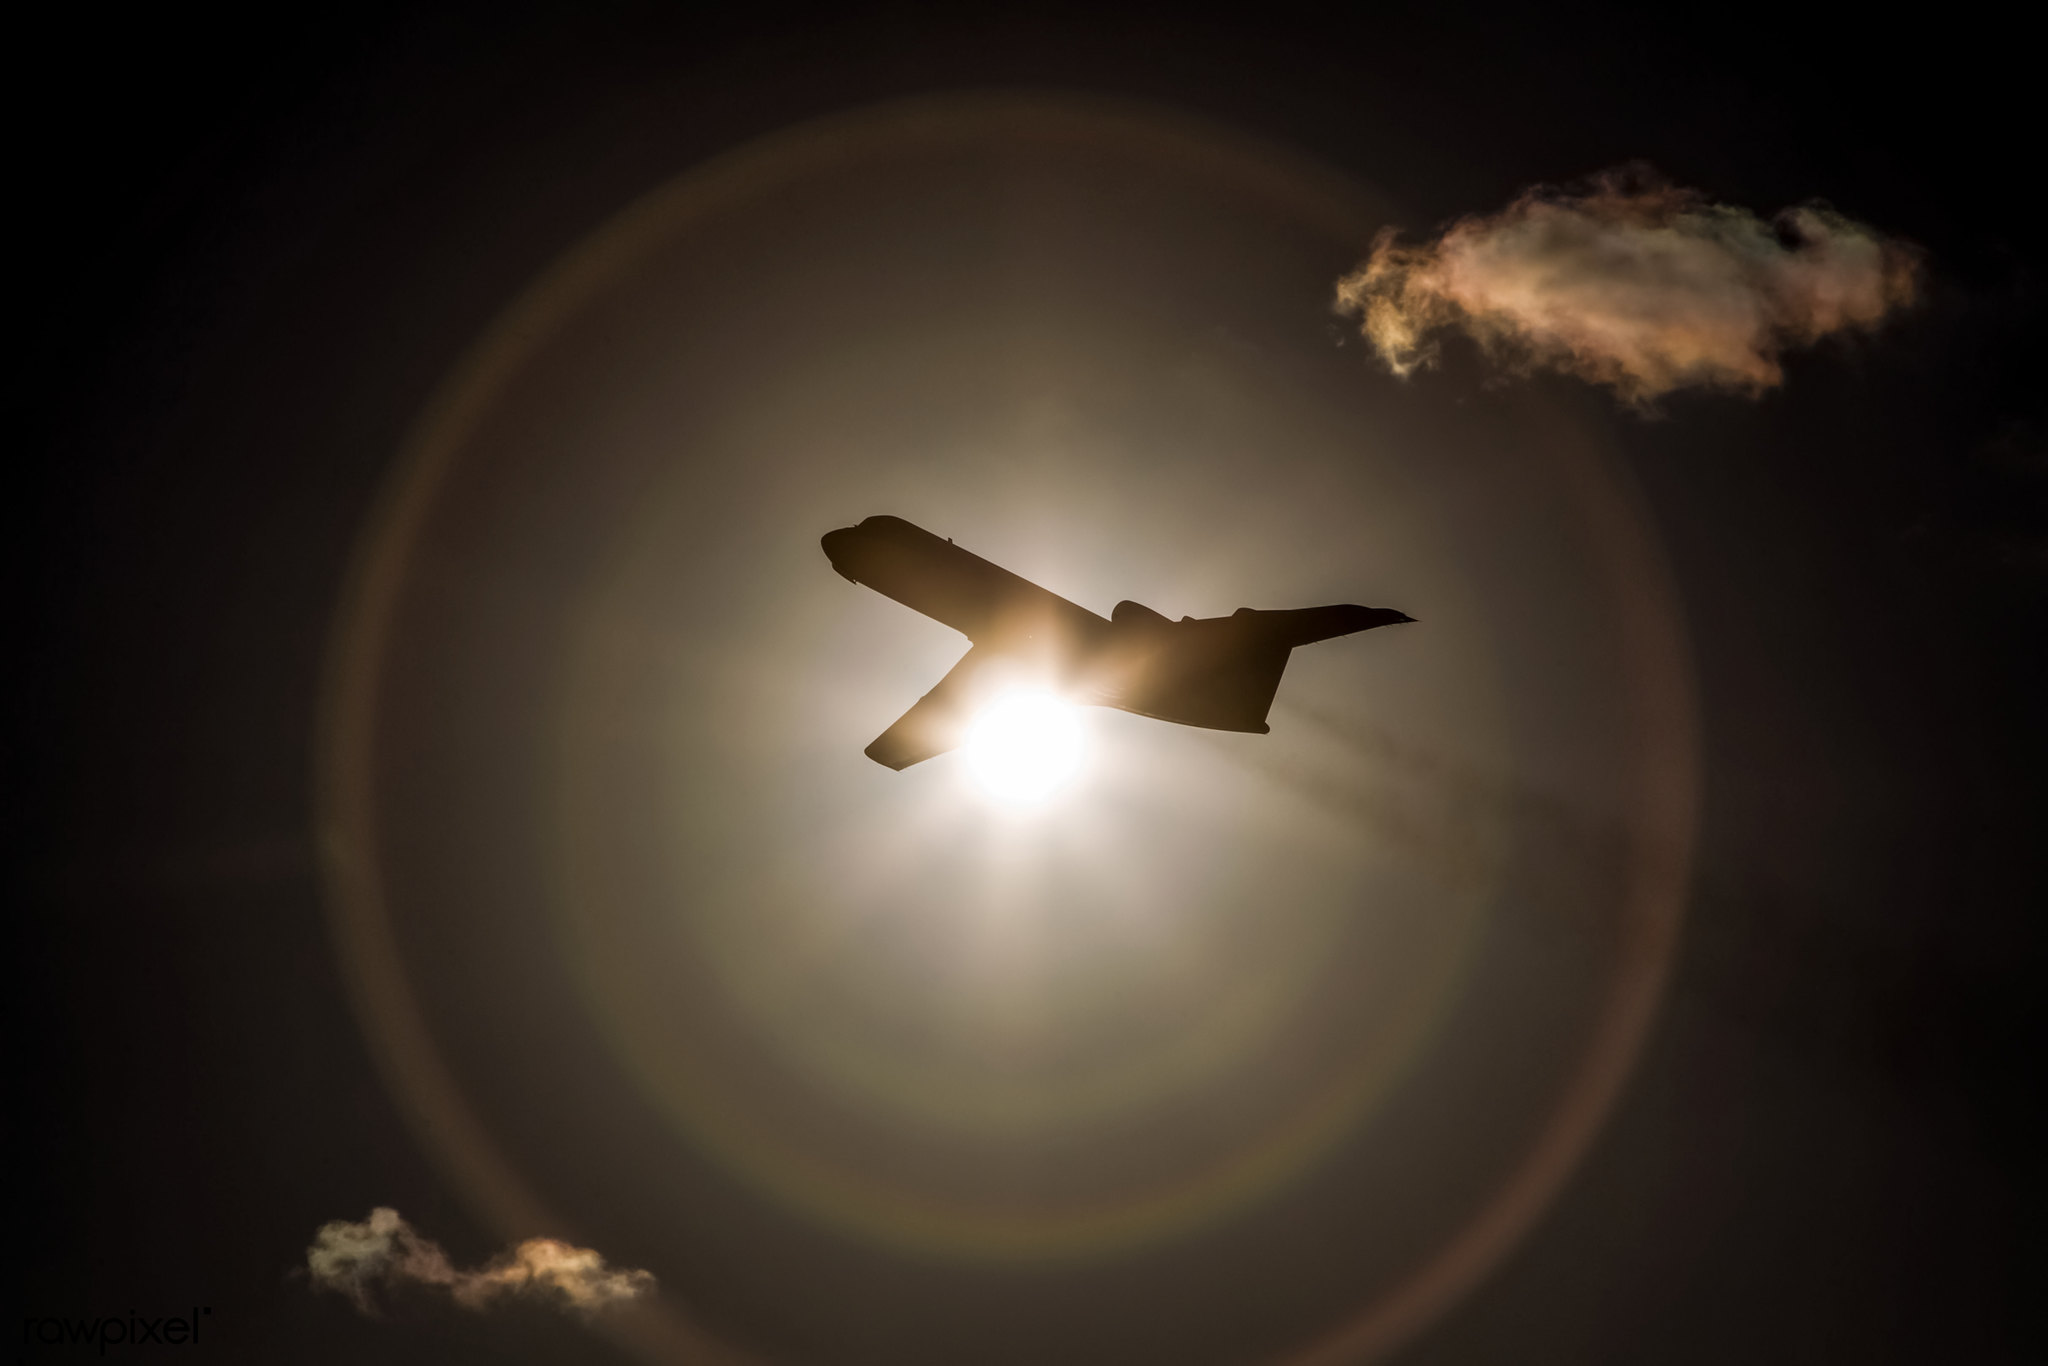 המטוס של נאס"א יטוס גבוה בהרבה מעל מטוסי נוסעים כדי להגיע לשכבה גבוהה מאוד של האטמוספרה. קרדיט: NASA